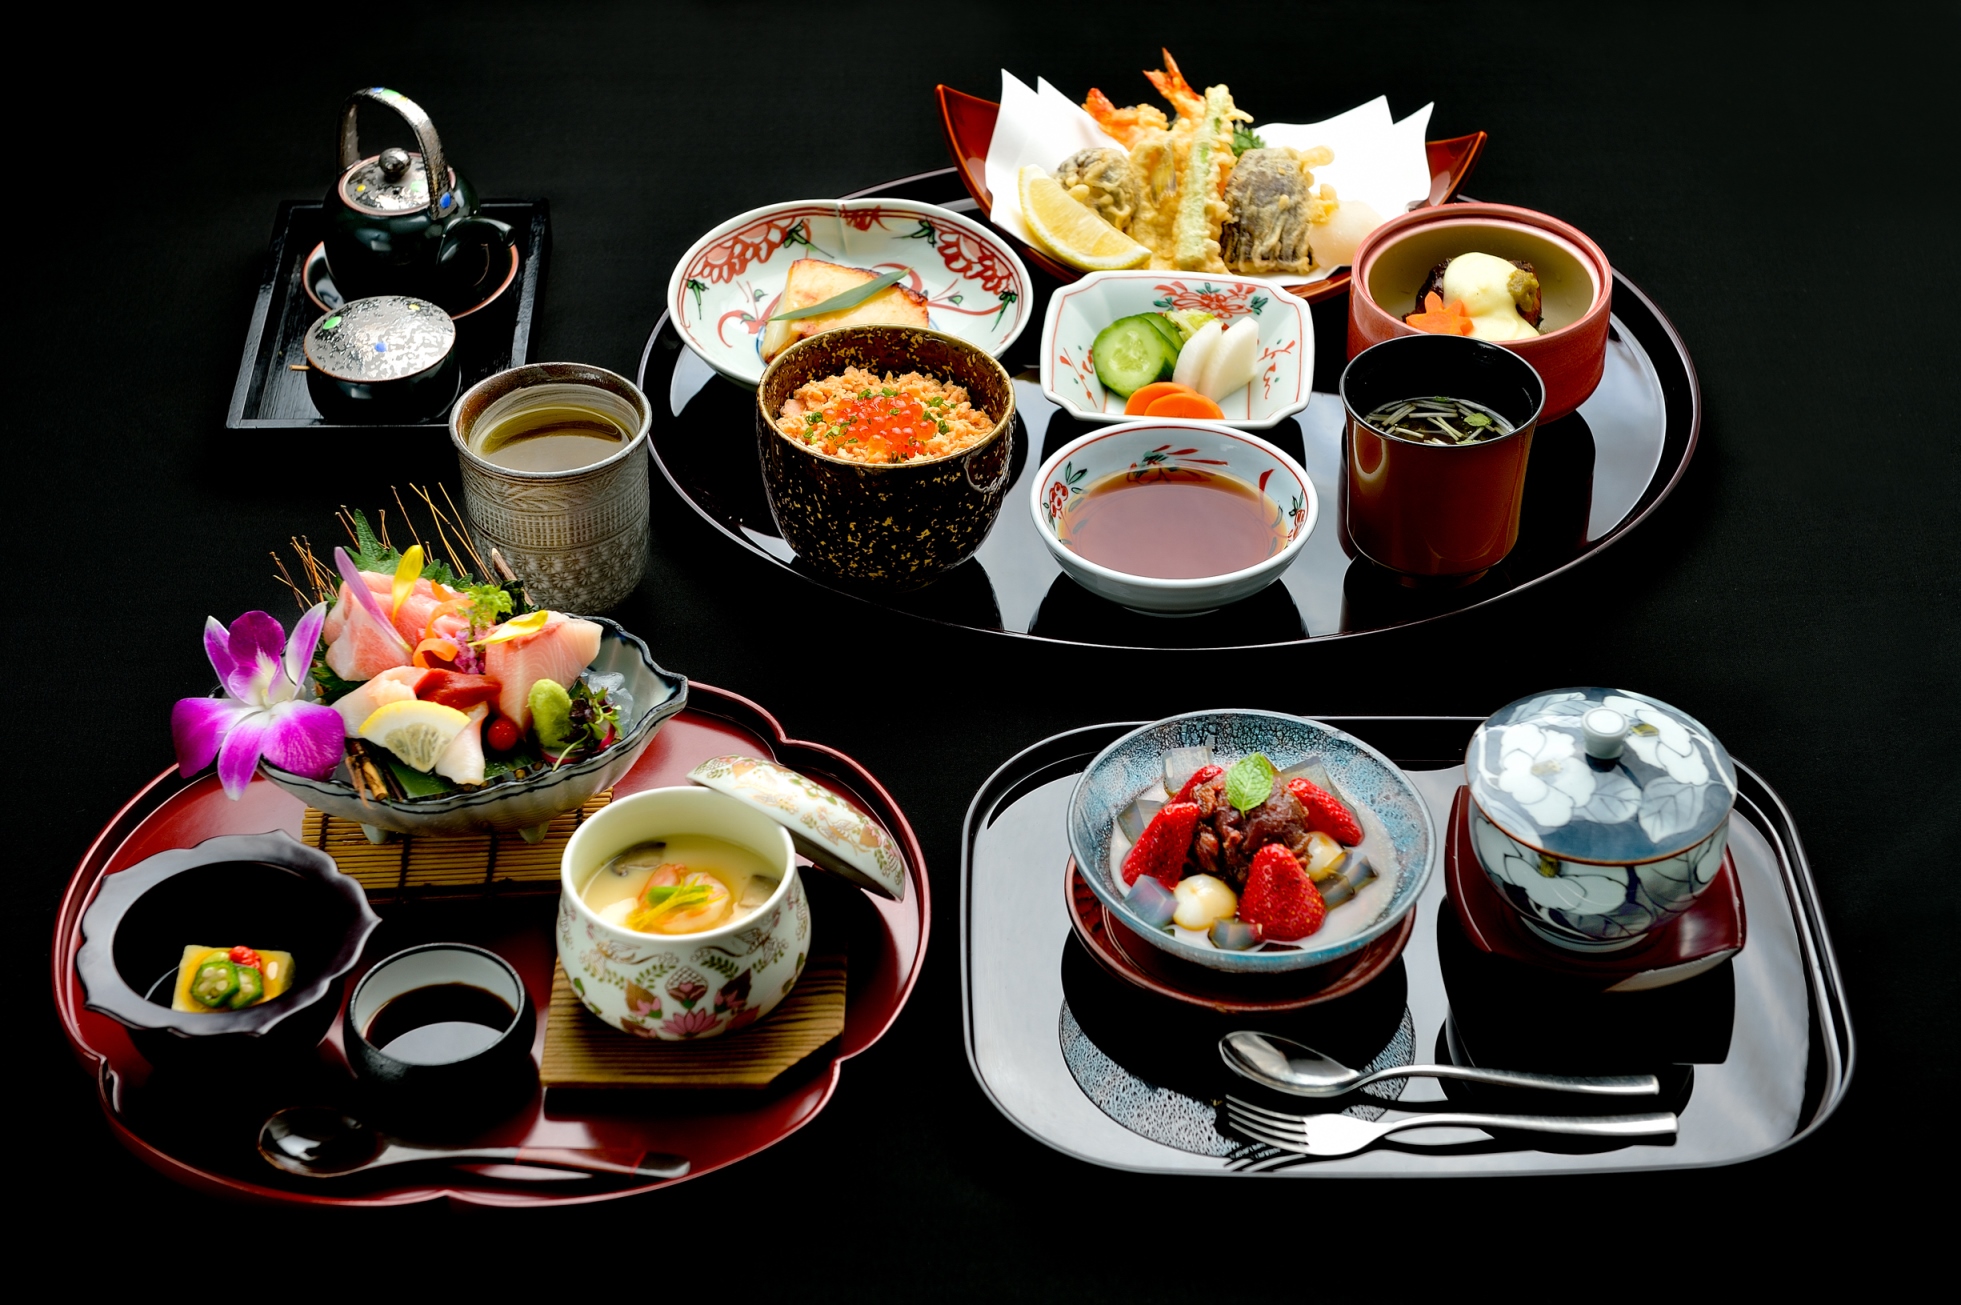 ห้องอาหารยามาซาโตะได้รับ มิชลิน เพลท จากคู่มือแนะนำร้านอาหารและที่พักระดับโลก 'มิชลิน ไกด์' ต่อเนื่องเป็นปีที่